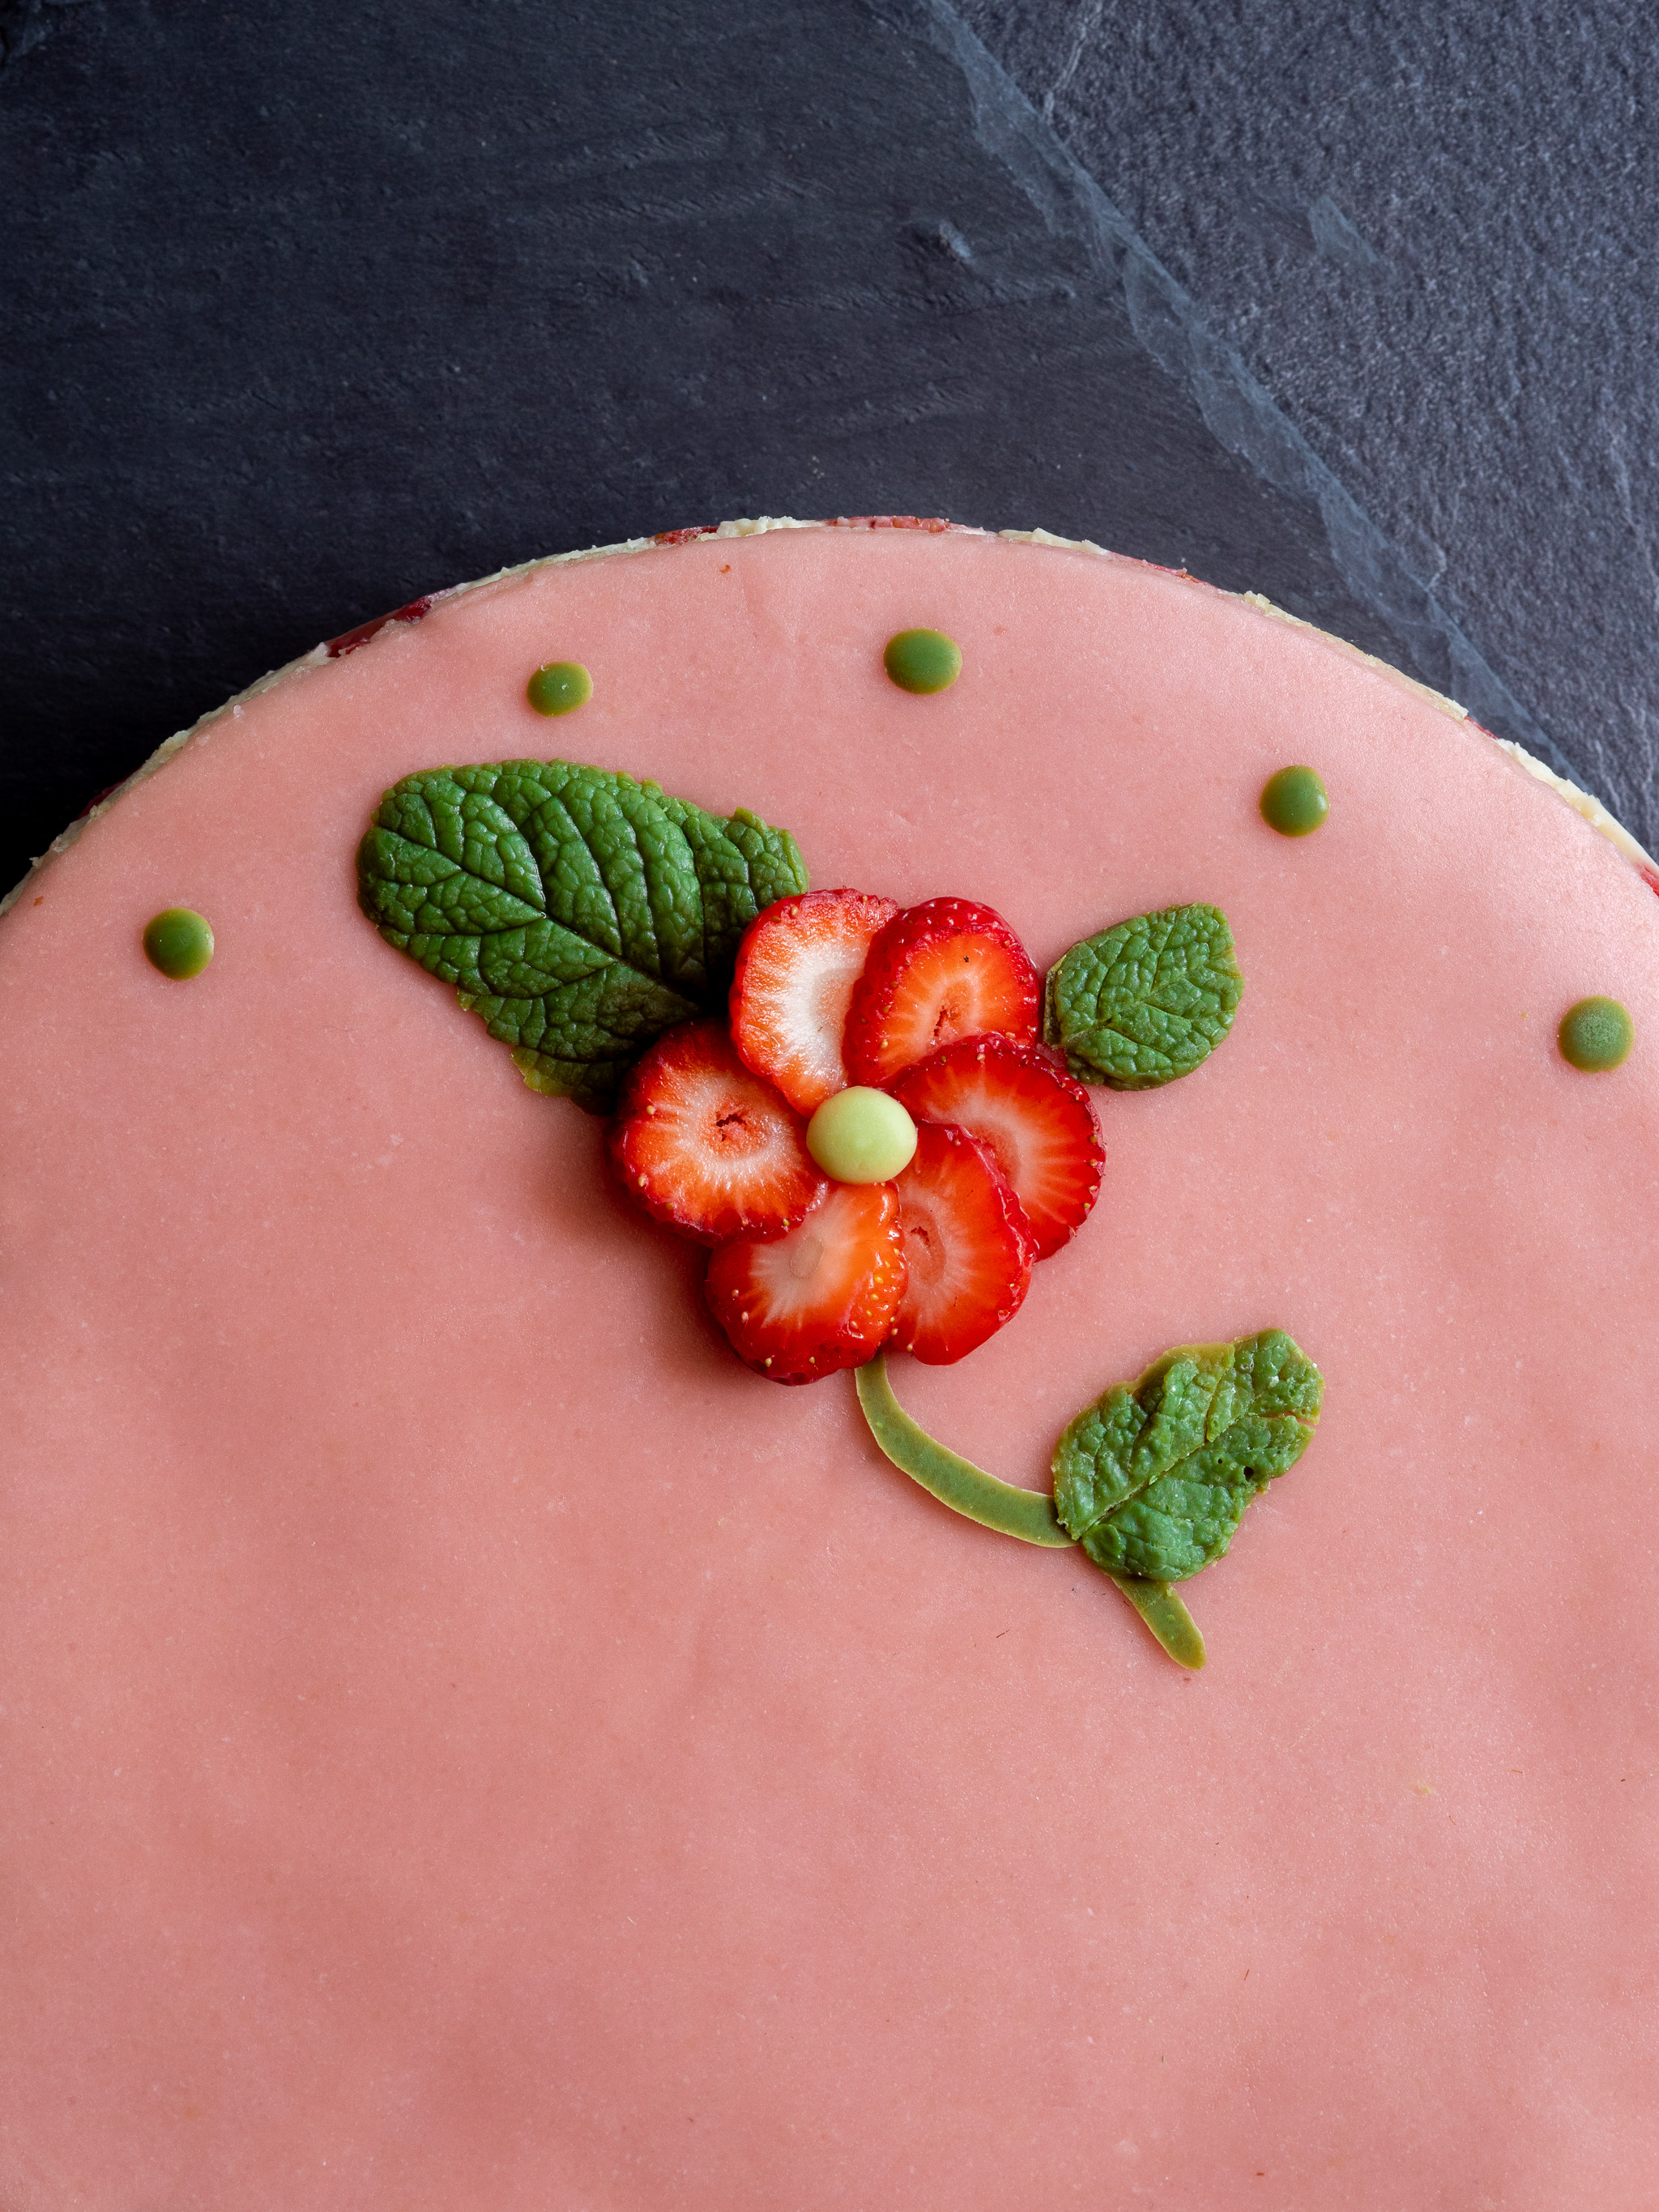 décoration de notre fraisier vegan avec une fleur en rondelle de fraise et des feuilles en chocolat blanc au thé matcha pour le côté vert